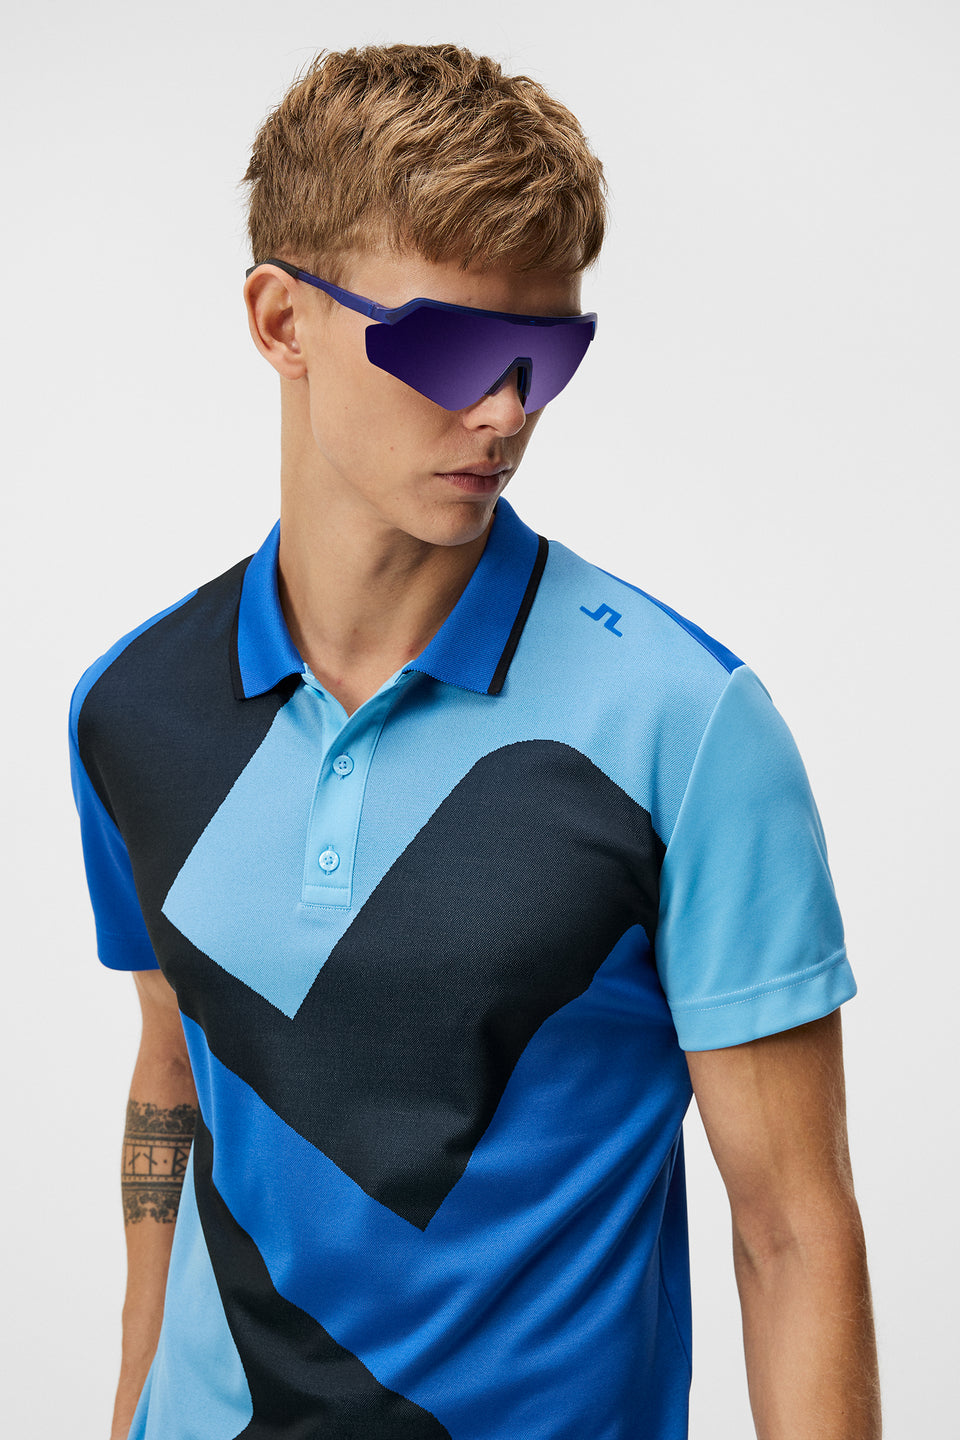 Golf Clothing for Men - J.Lindeberg